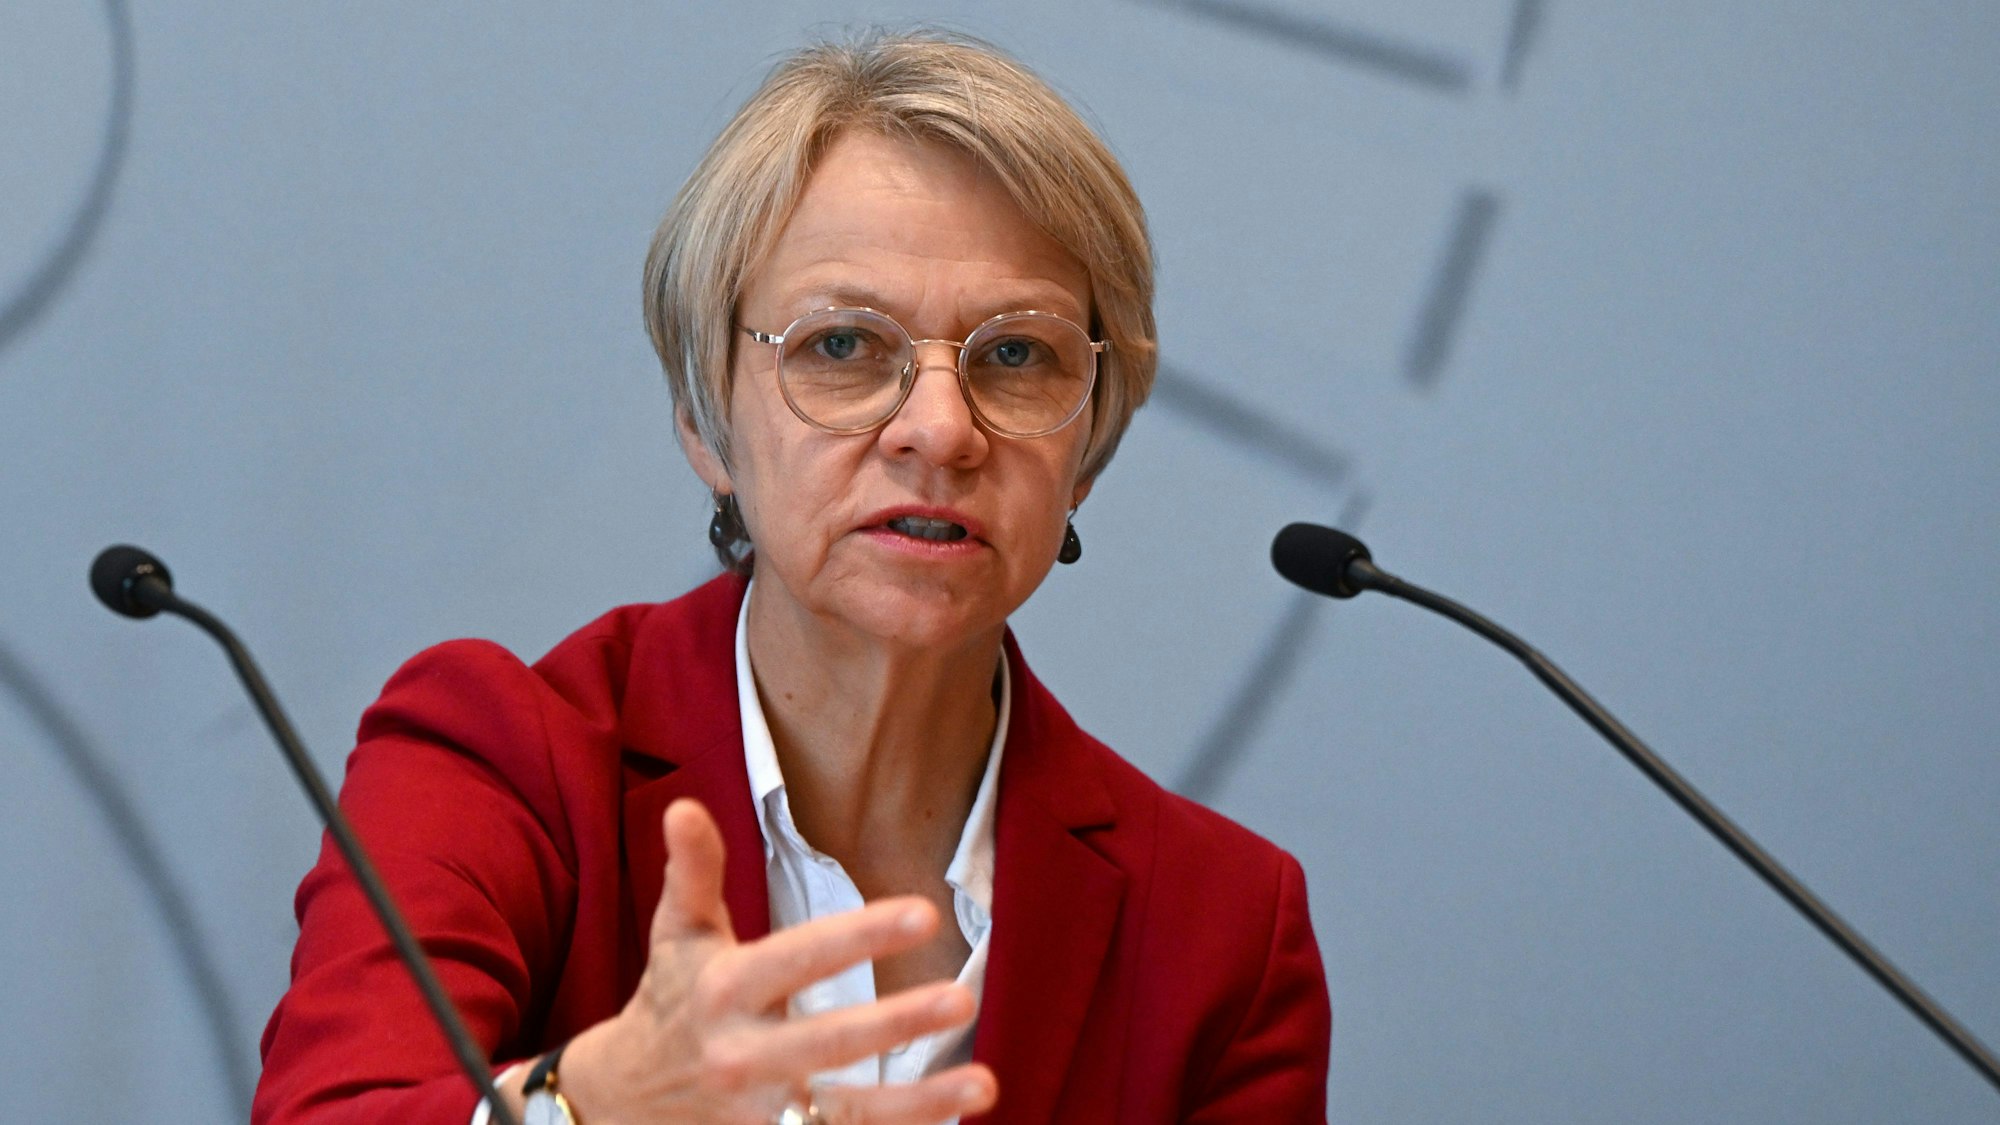 Dorothee Feller (CDU), Schulministerin von Nordrhein-Westfalen, gestikuliert vor Mikrofonen